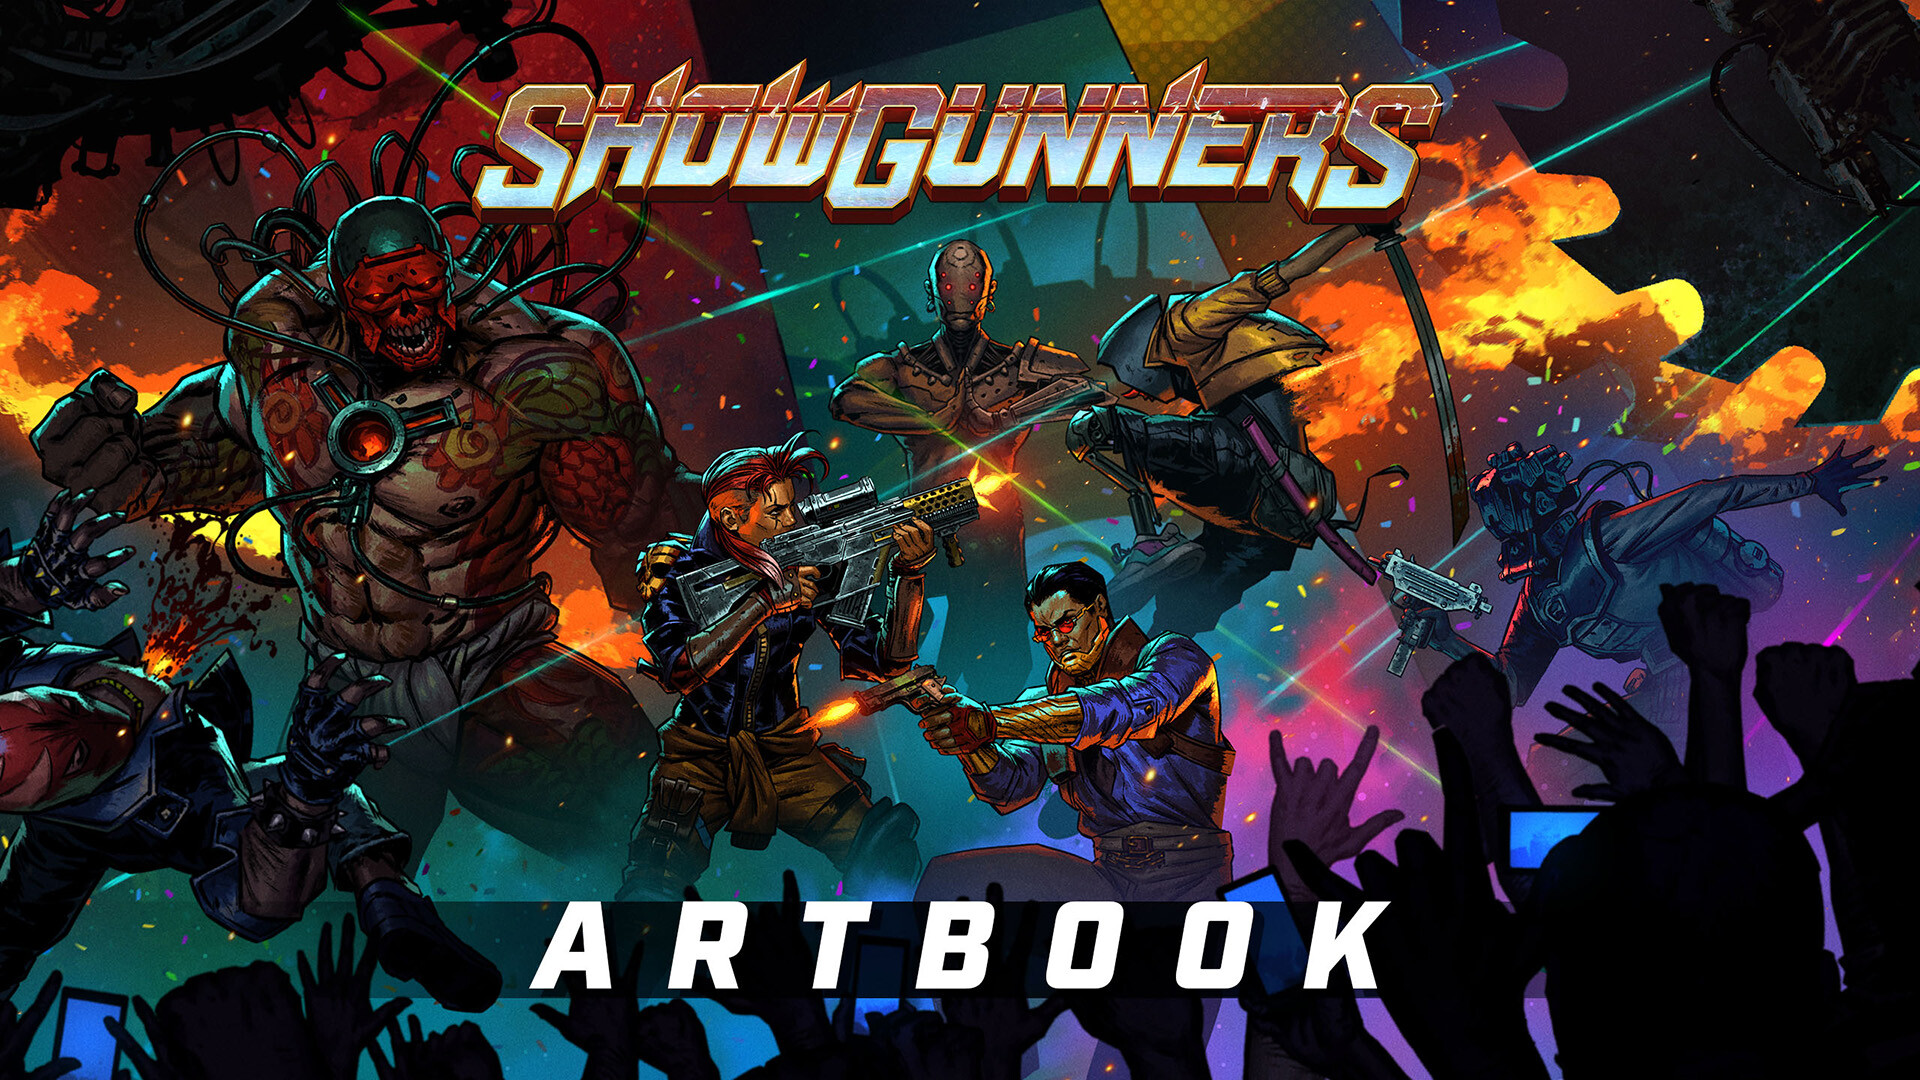 Showgunners - Art Book Featured Screenshot #1